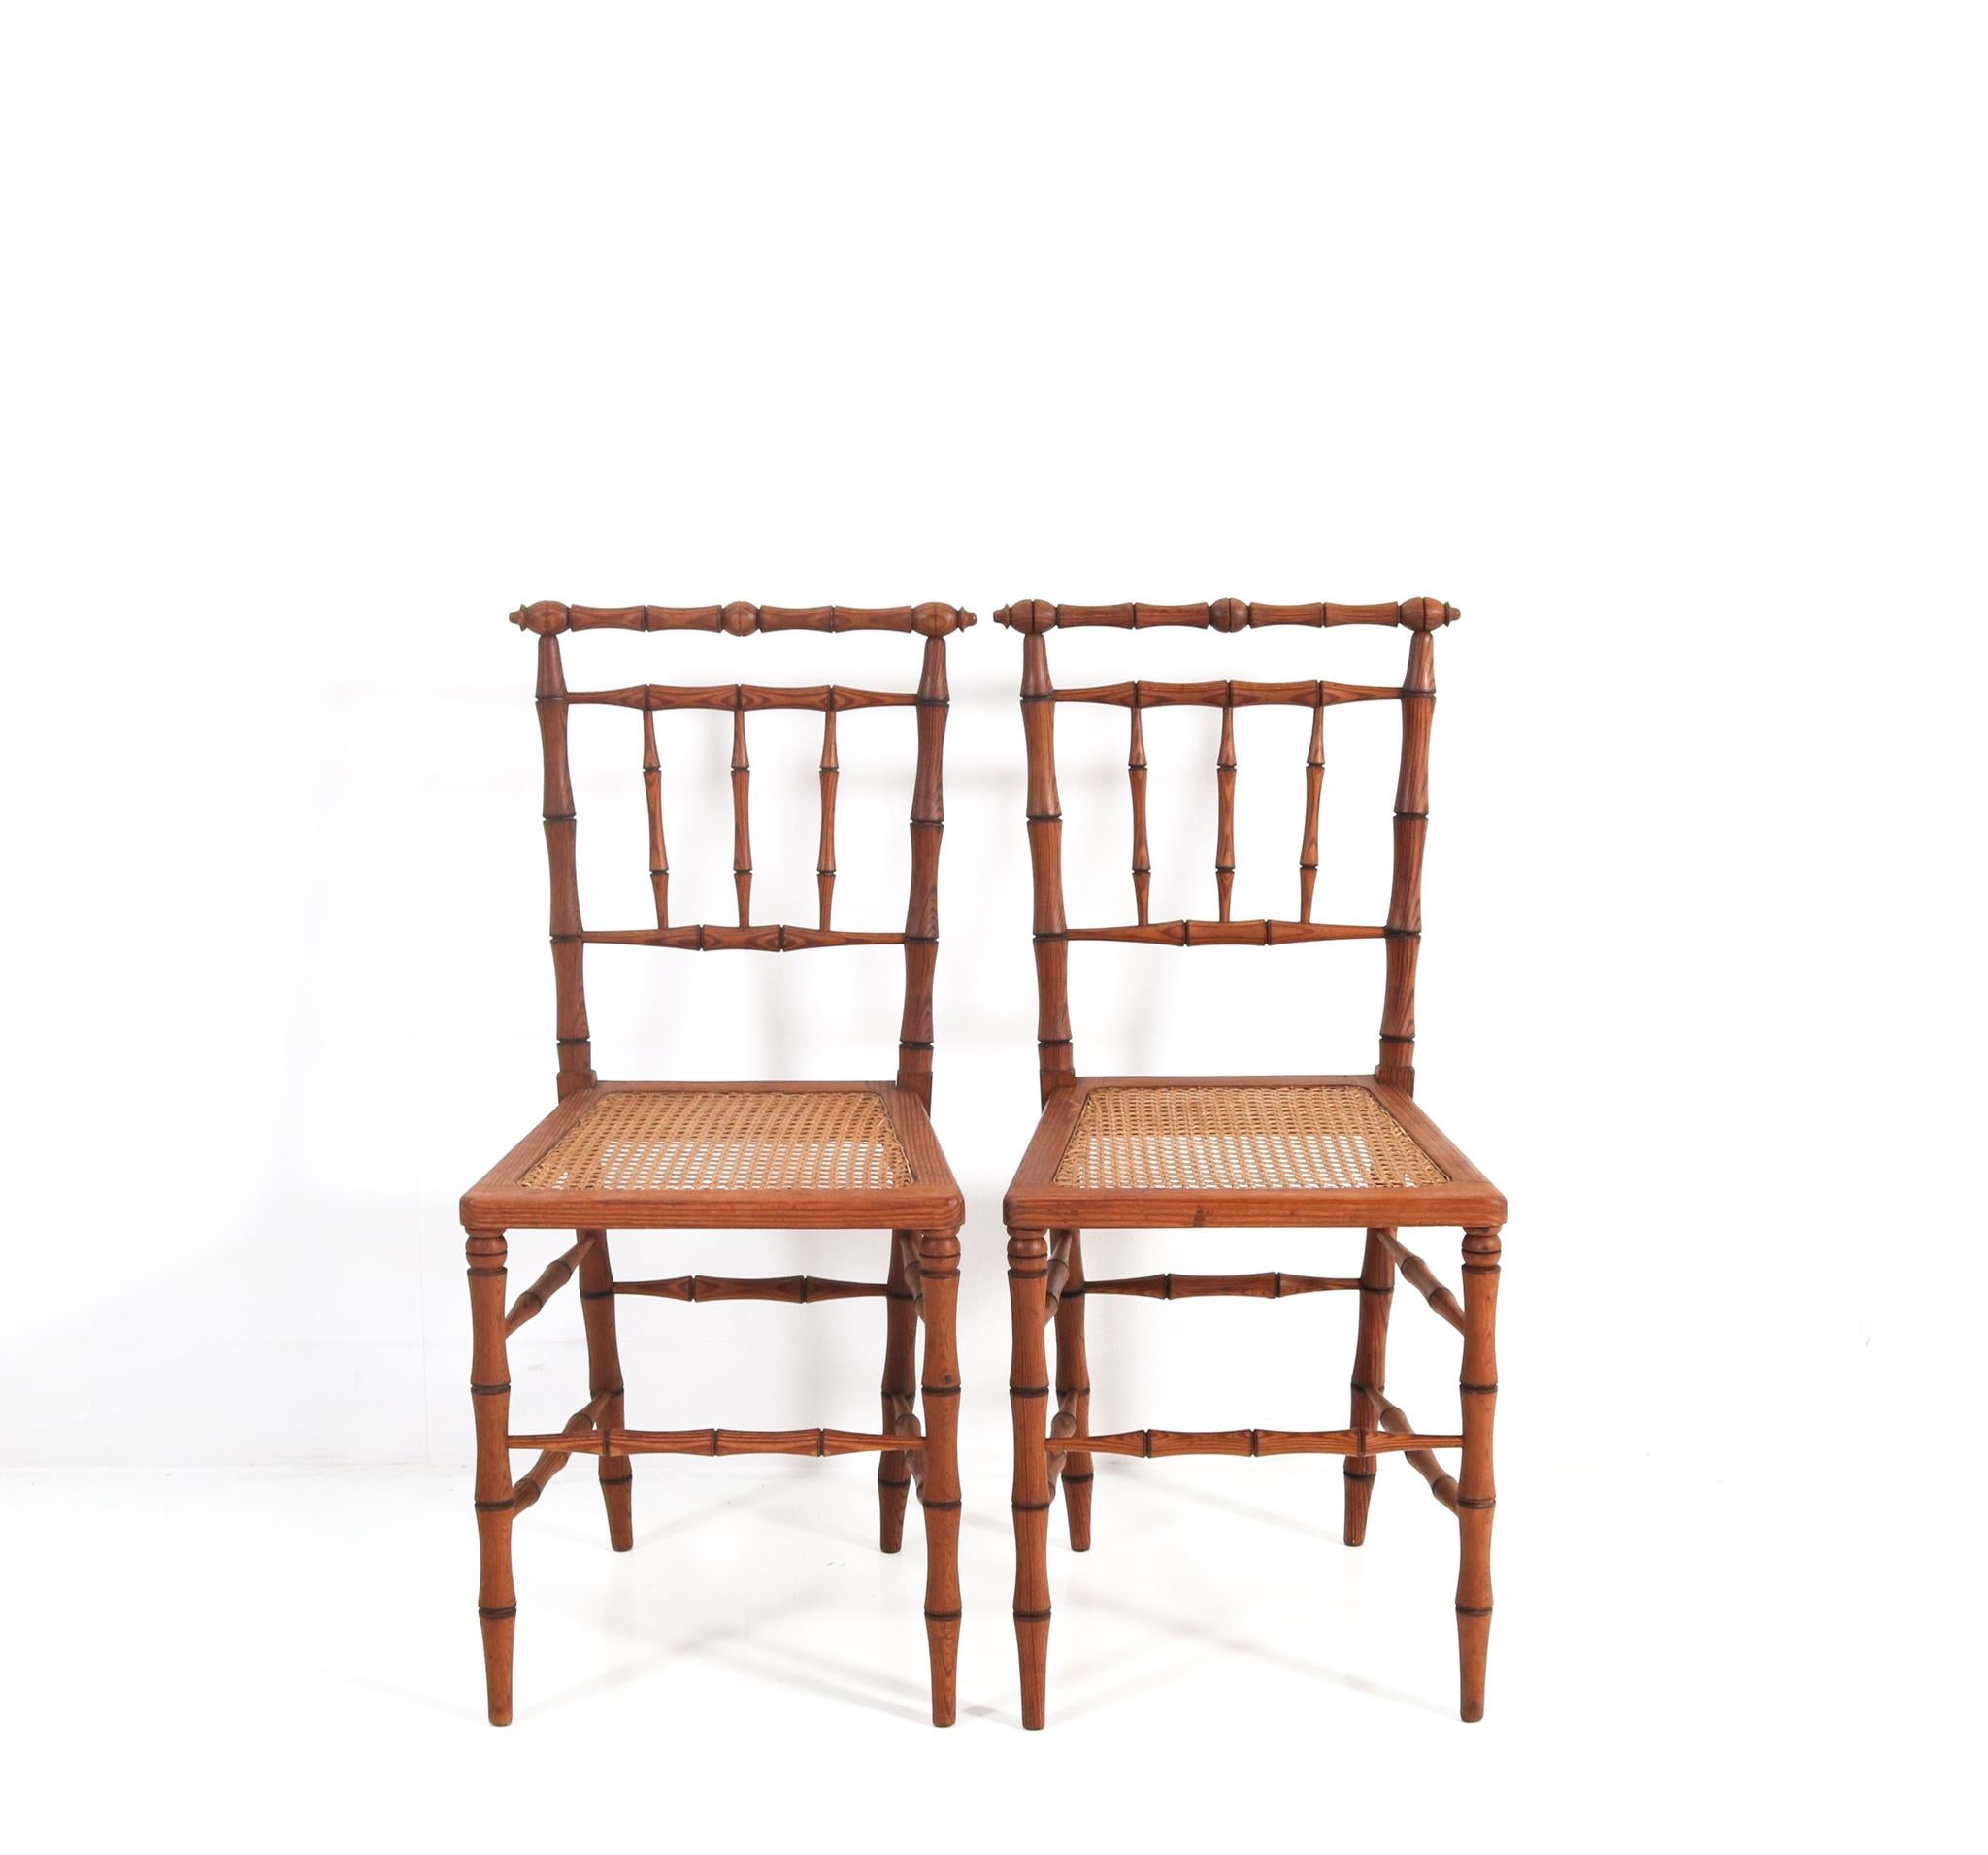 Wunderschönes und seltenes Paar Jugendstil-Beistellstühle.
Auffälliges französisches Design aus den 1900er Jahren.
Massive Pitch-Pine-Rahmen im Faux Bamboo-Stil mit originalen.
Sitze aus Korbgeflecht.
Selten wegen der Tatsache, dass dieses